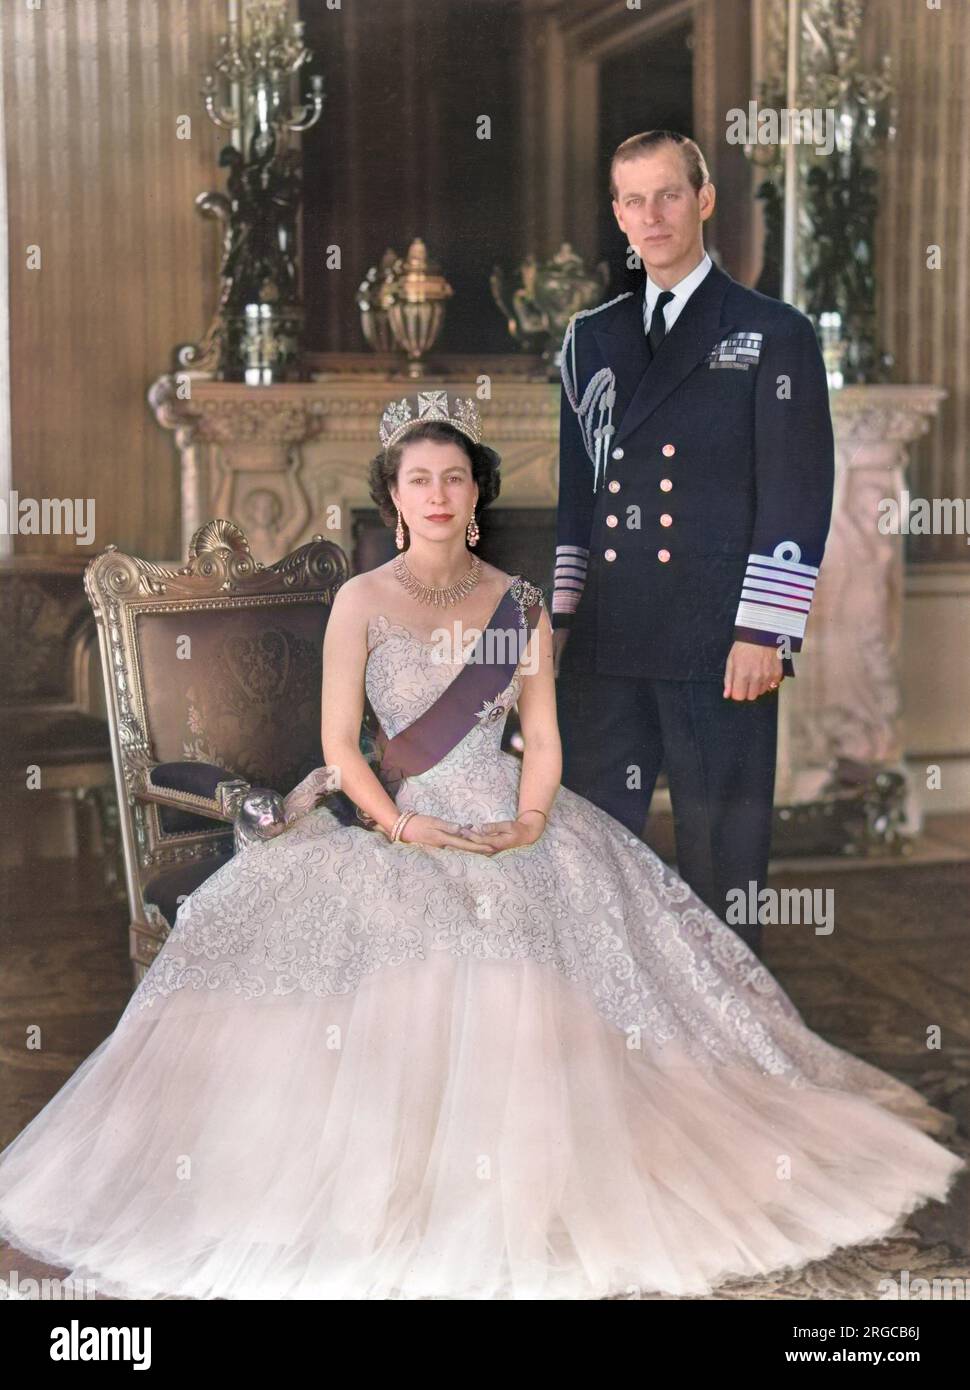 La reine Elizabeth II et le prince Philip, duc d'Édimbourg photographiés ensemble à l'entrée principale du palais de Buckingham en 1954. La Reine porte une robe de soirée en tulle jaune ornée de jets de mimosa et de broderie de pailette d'or et porte le ruban bleu et l'étoile de la jarretière. Son collier était un cadeau de mariage du Nizam de Hyderabad; le tiara était également un cadeau de mariage de la reine Marie. La broche en forme de noeud et les pendants d'oreilles sont ornés de diamants. Le duc porte l'uniforme de l'amiral de la flotte. Banque D'Images